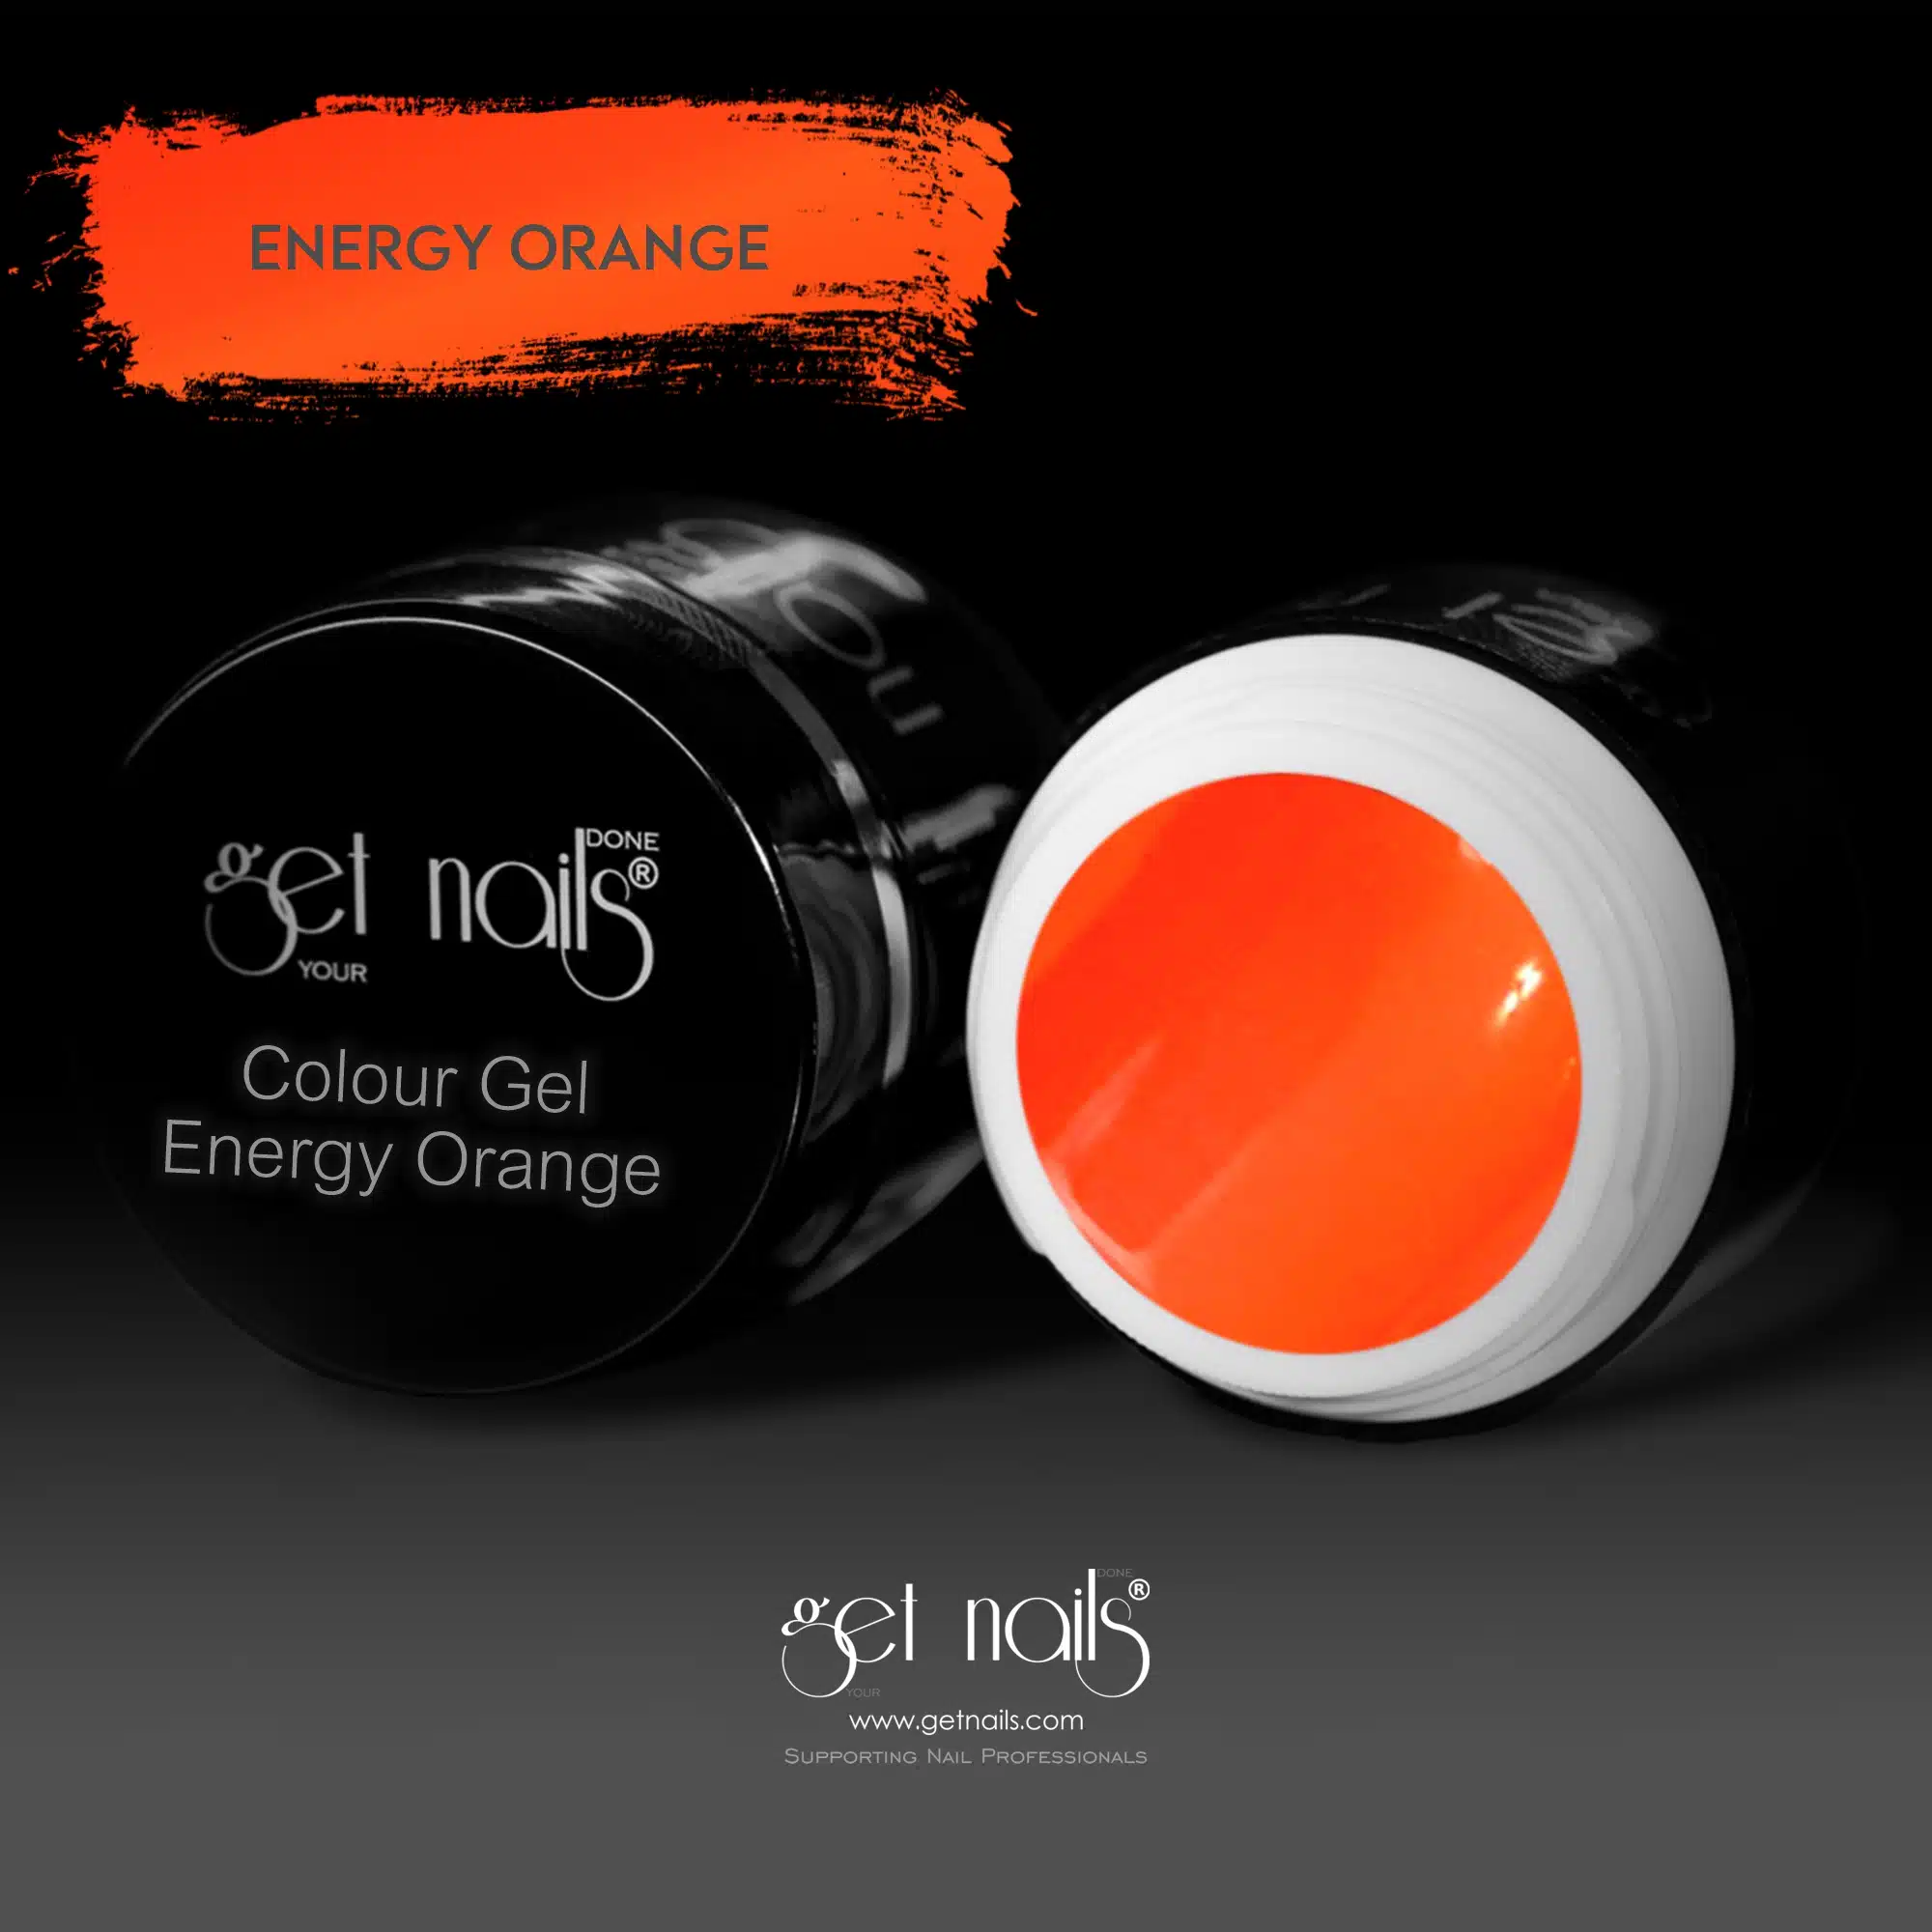 Get Nails Austria - Цветной гель Energy Orange 5g